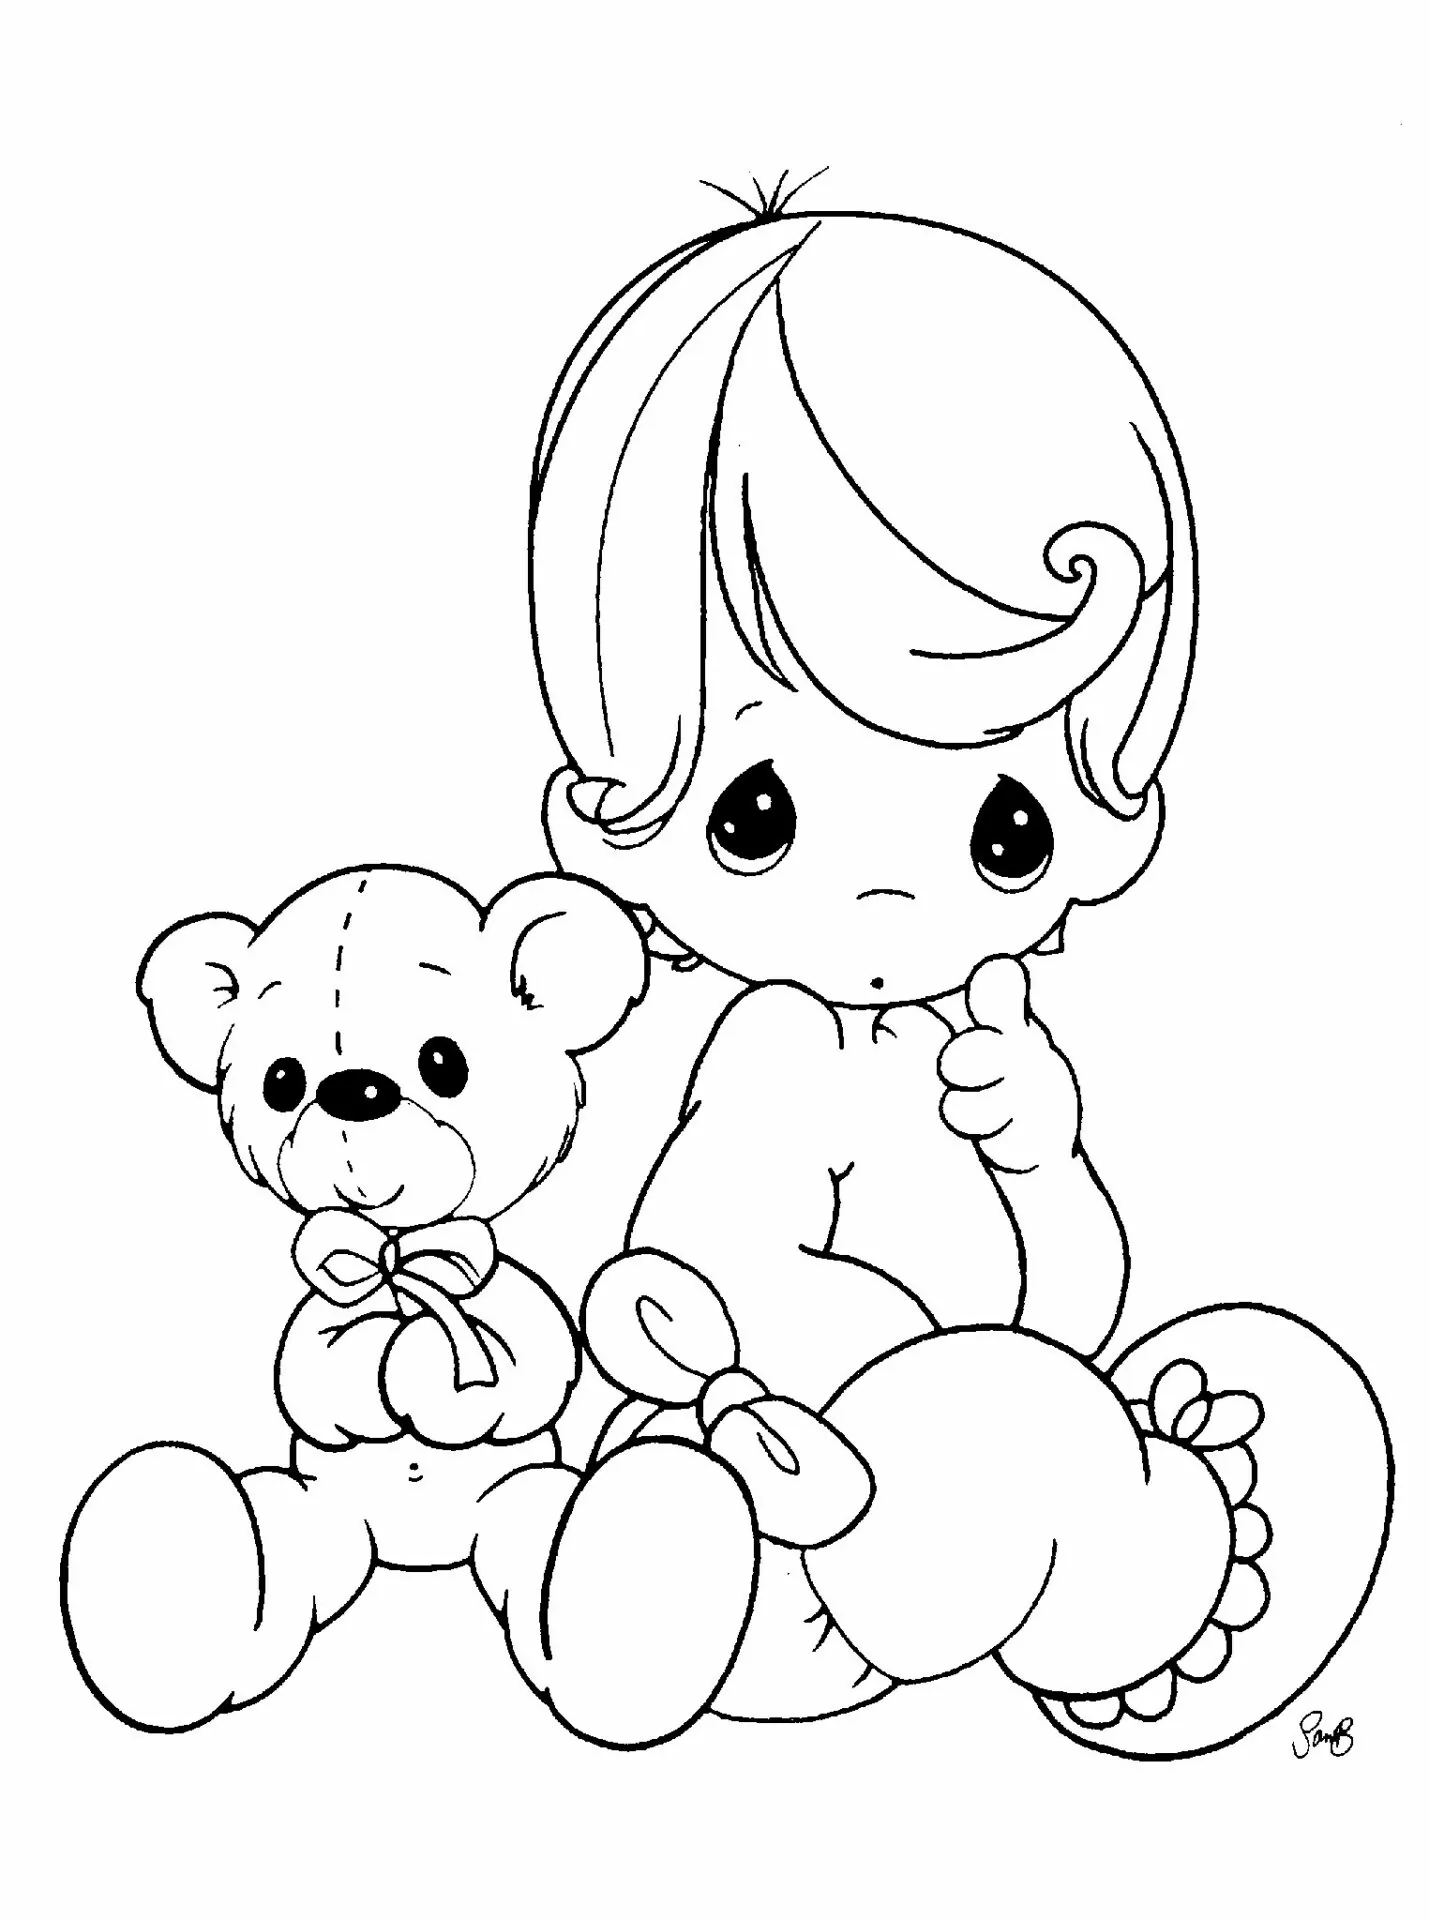 Little Boy And Teddy Bear